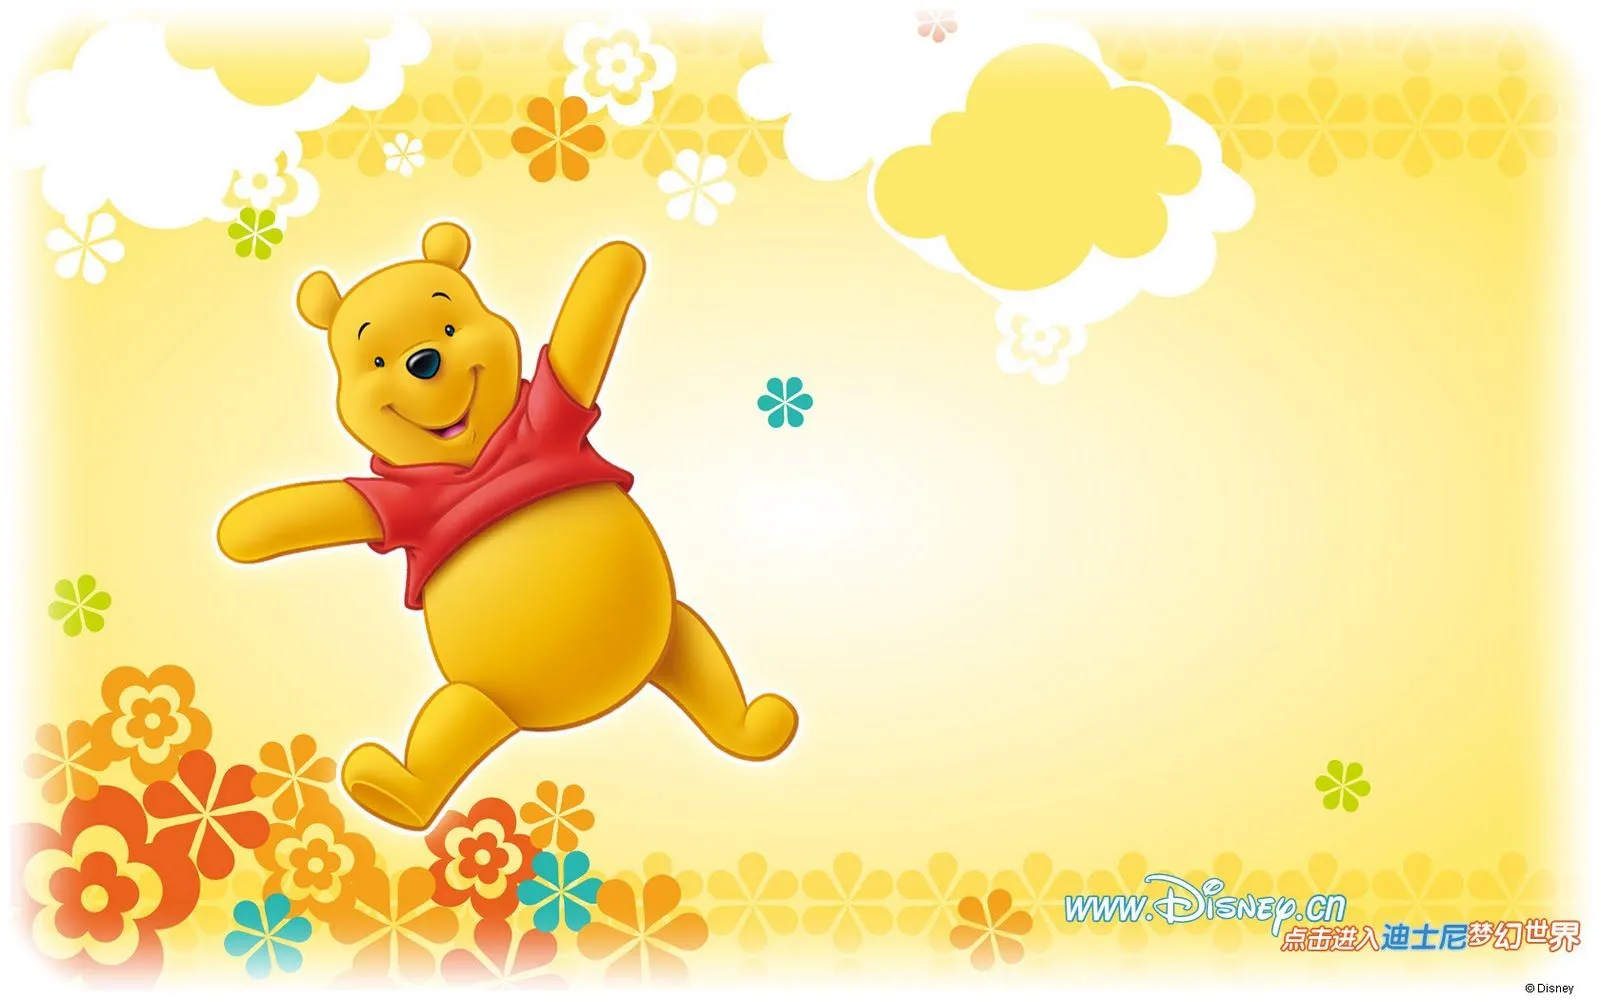  ... Gratuitas: Wallpapers de Winnie Pooh by Disney I (8 imágenes